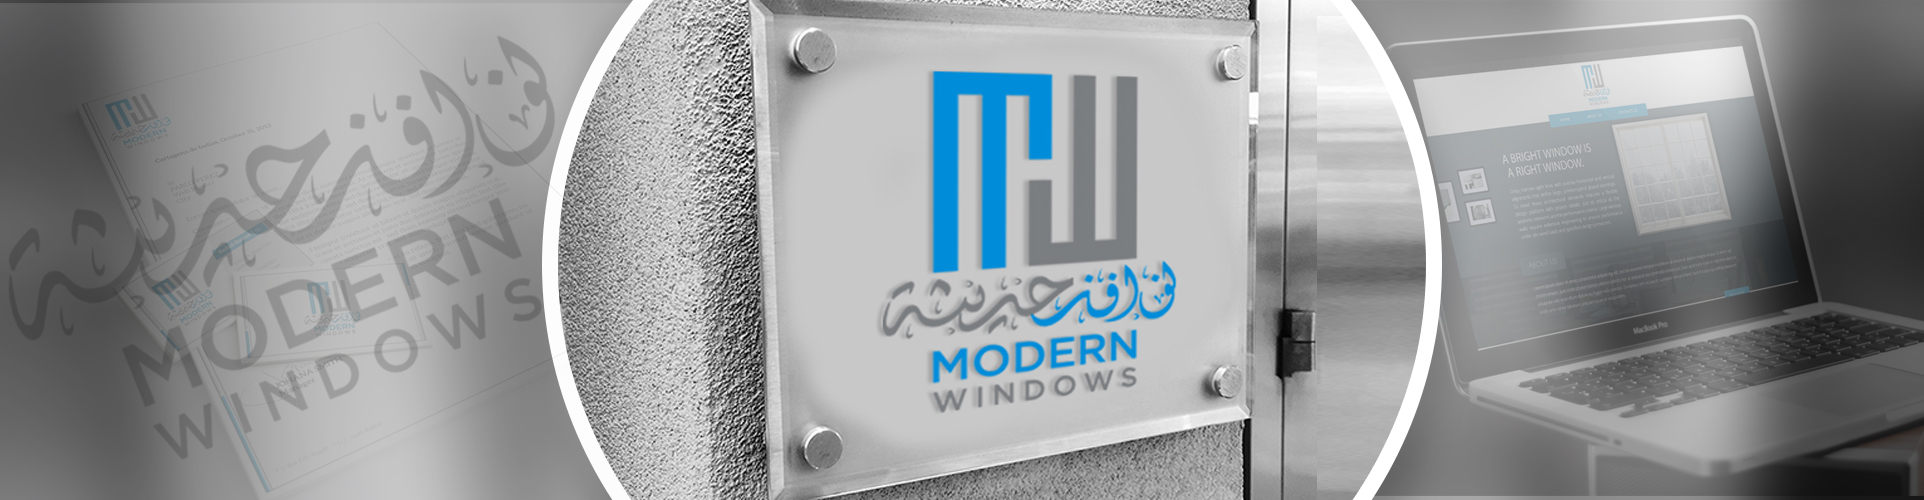 Logo Designing for Modern Windows